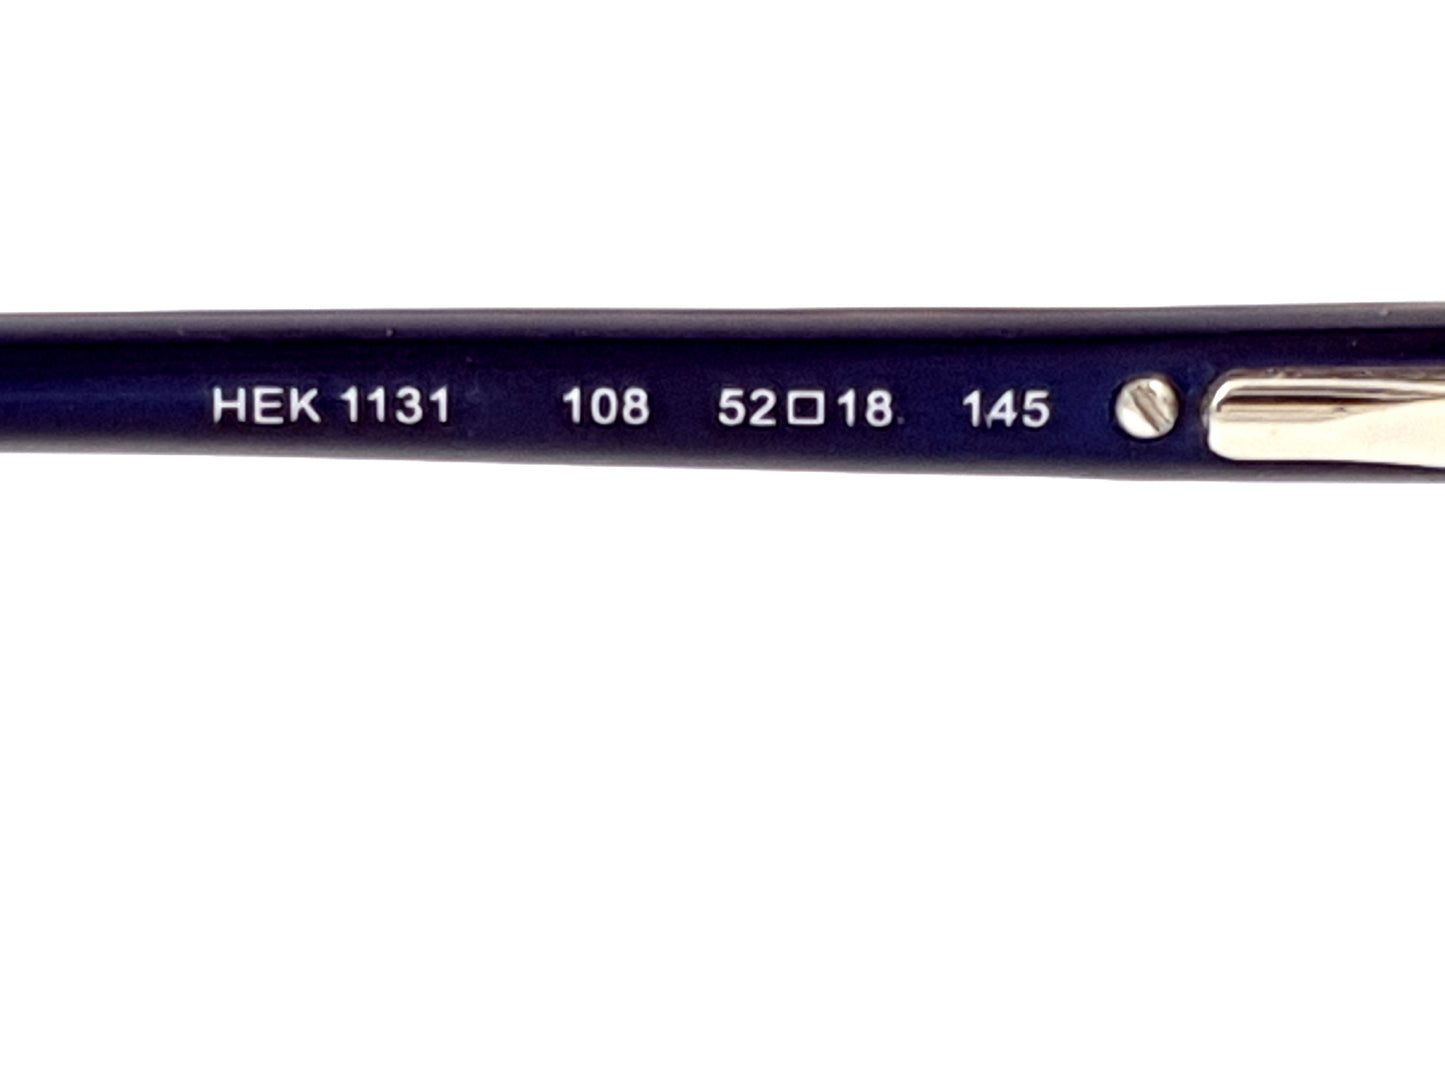 HACKETT HEK 1131